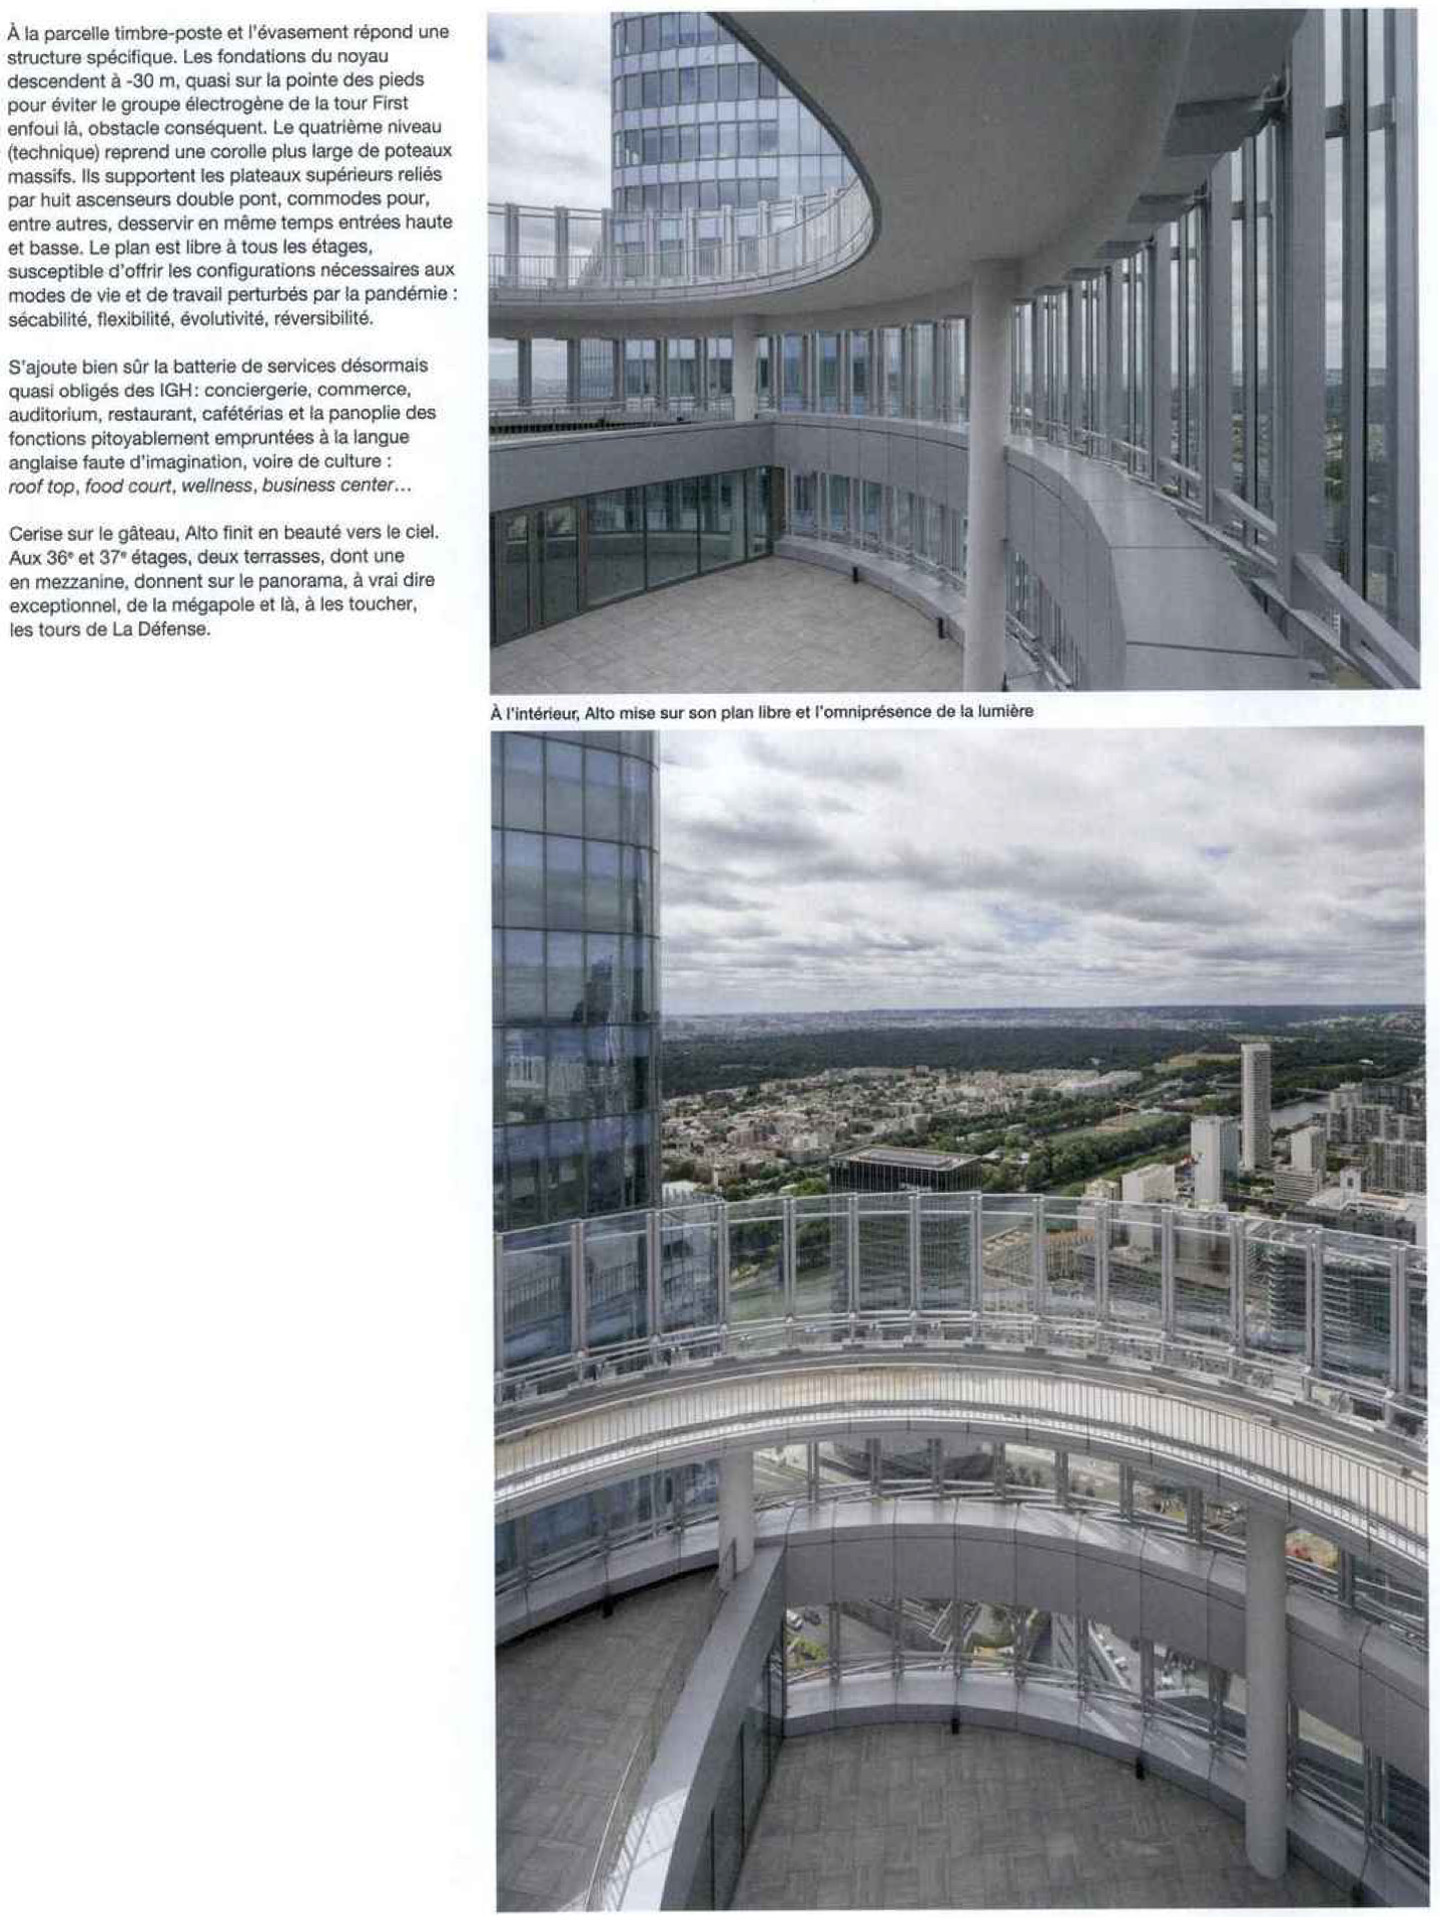 Article on the Tour Alto La Défense in the magazine Archicree for the studio jean-philippe nuel, interior design, service industry